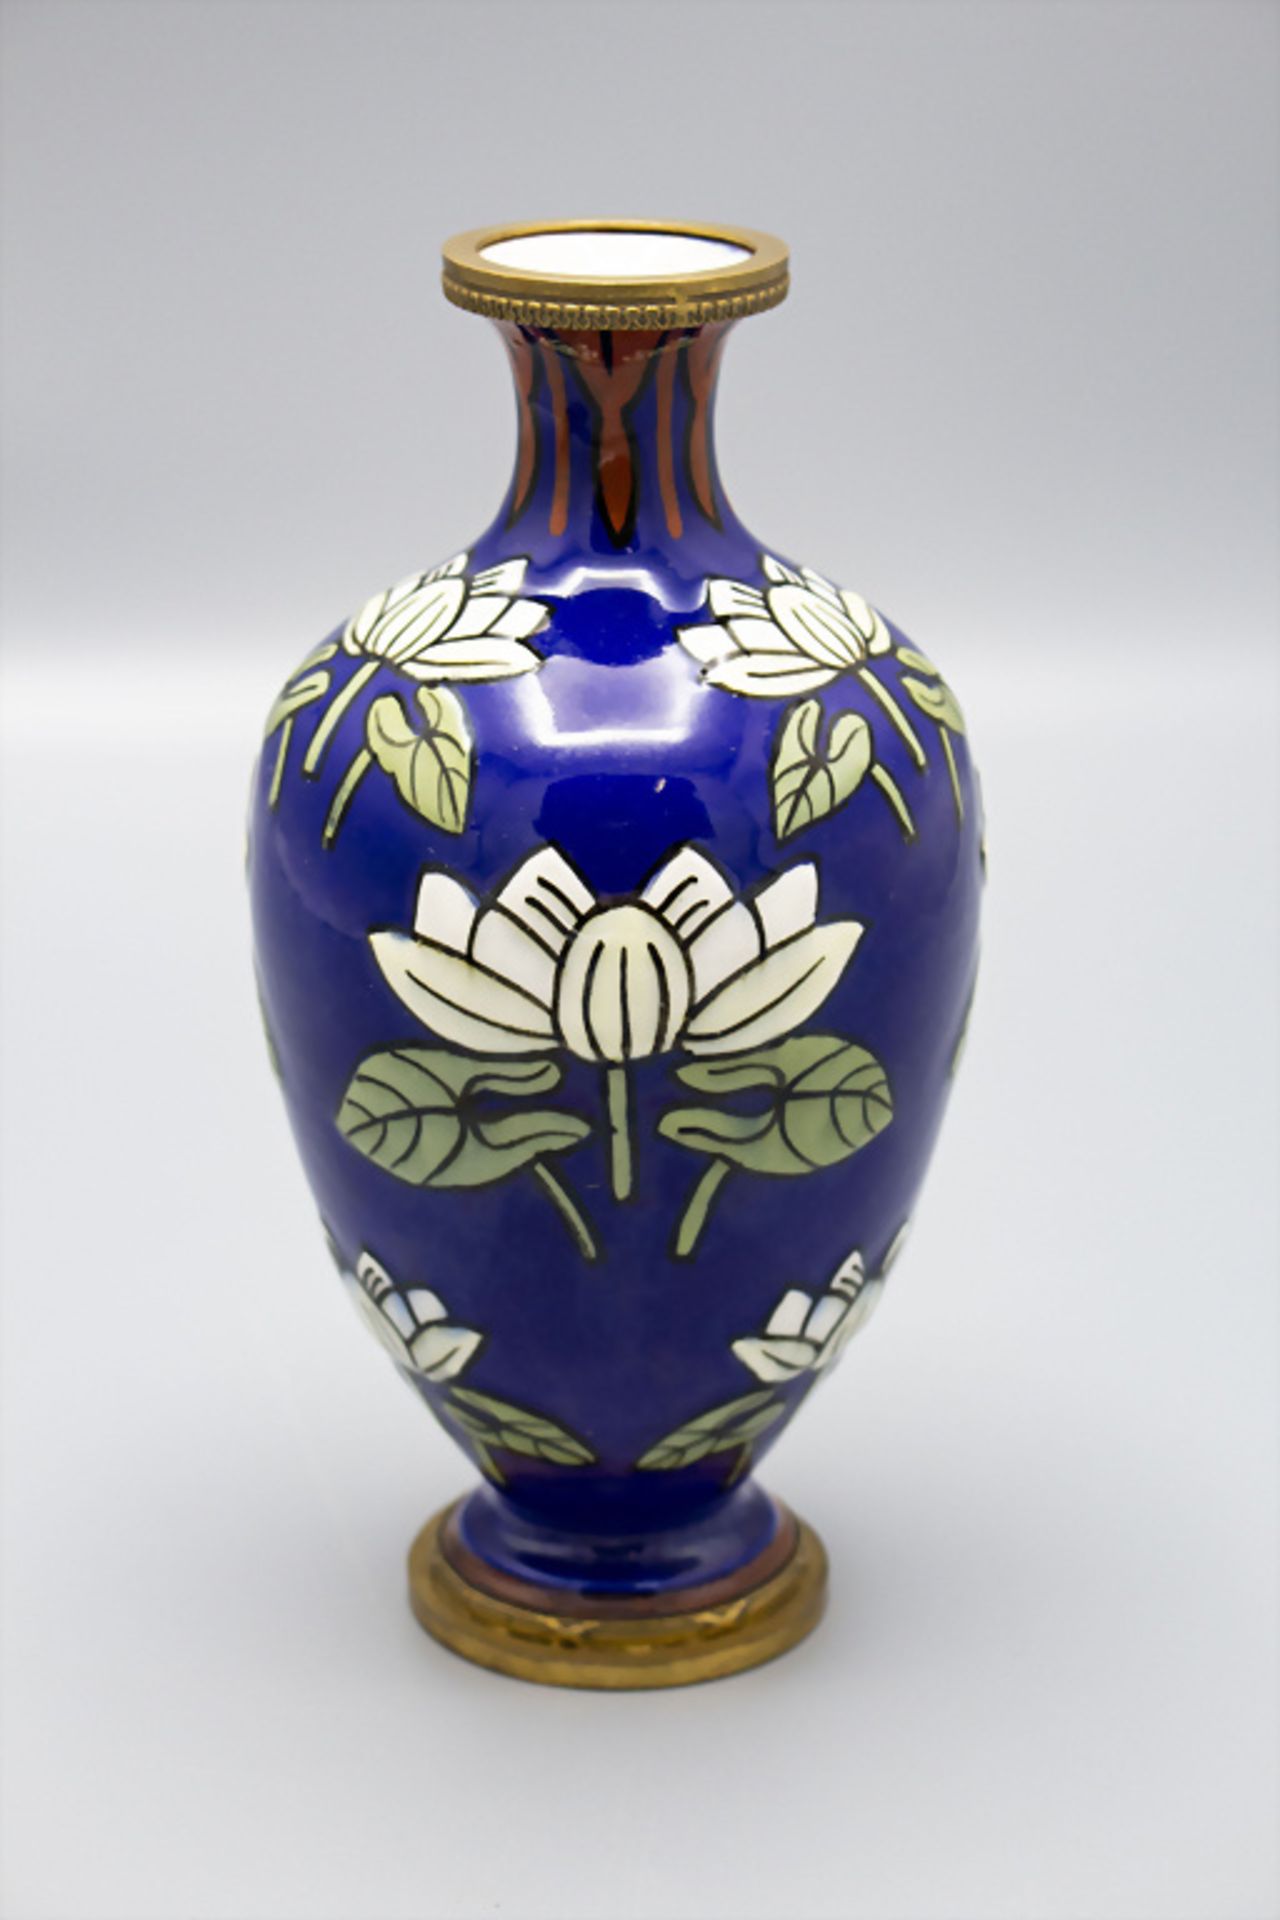 Jugendstil Vase mit Seerosen und Bronzemontur / An Art Nouveau faience vase with water lilies ... - Image 2 of 3